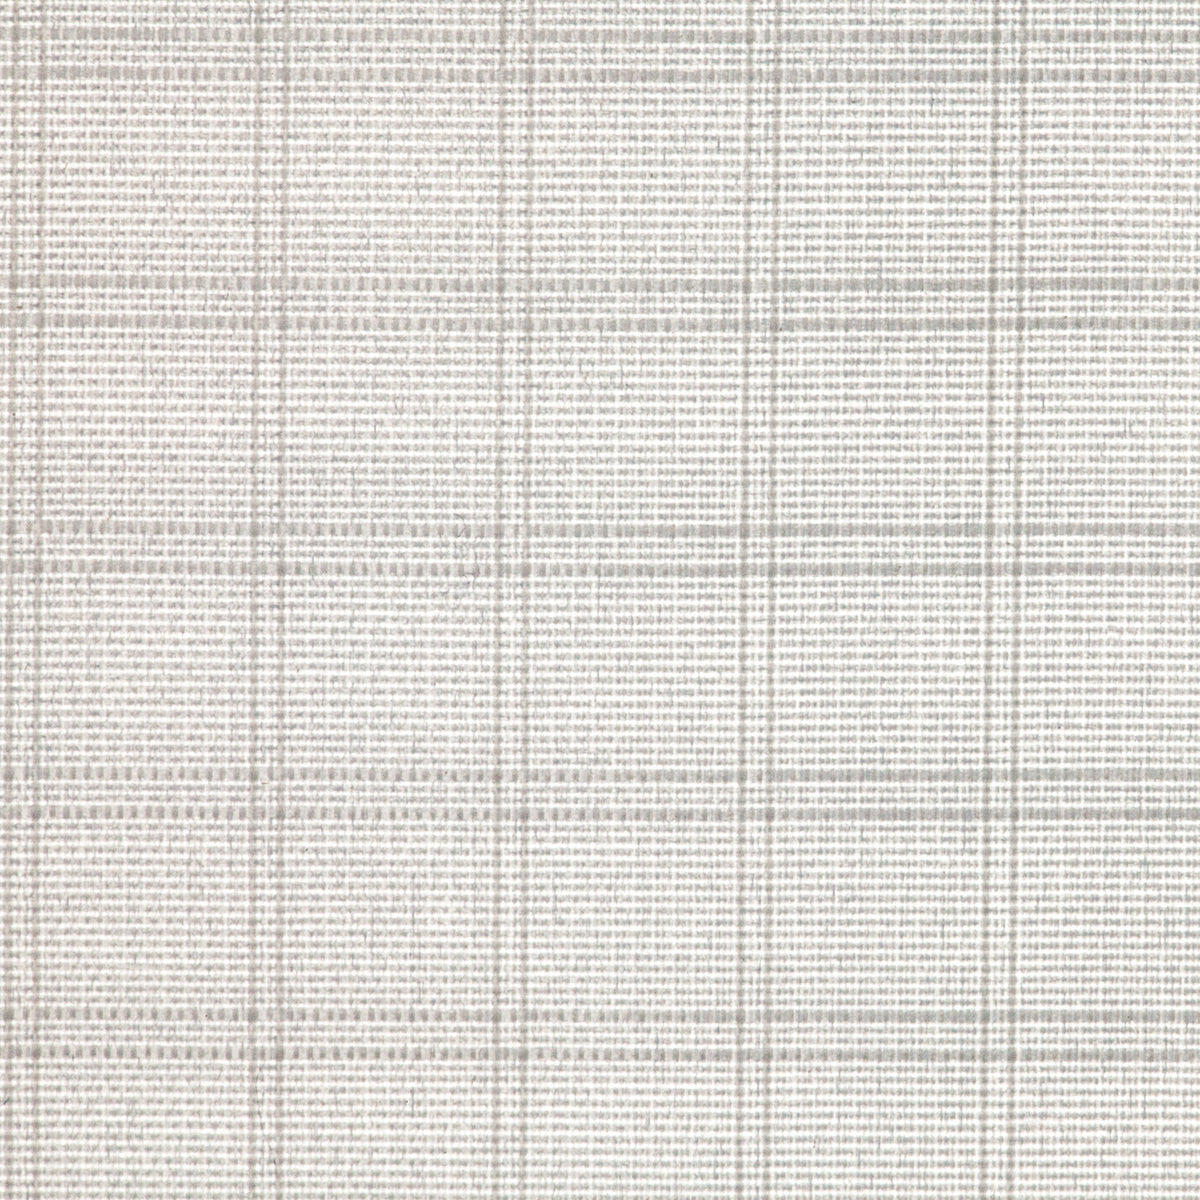 Flex Cine 1/2-Stop Grid Cloth Fabric (1' x 3')